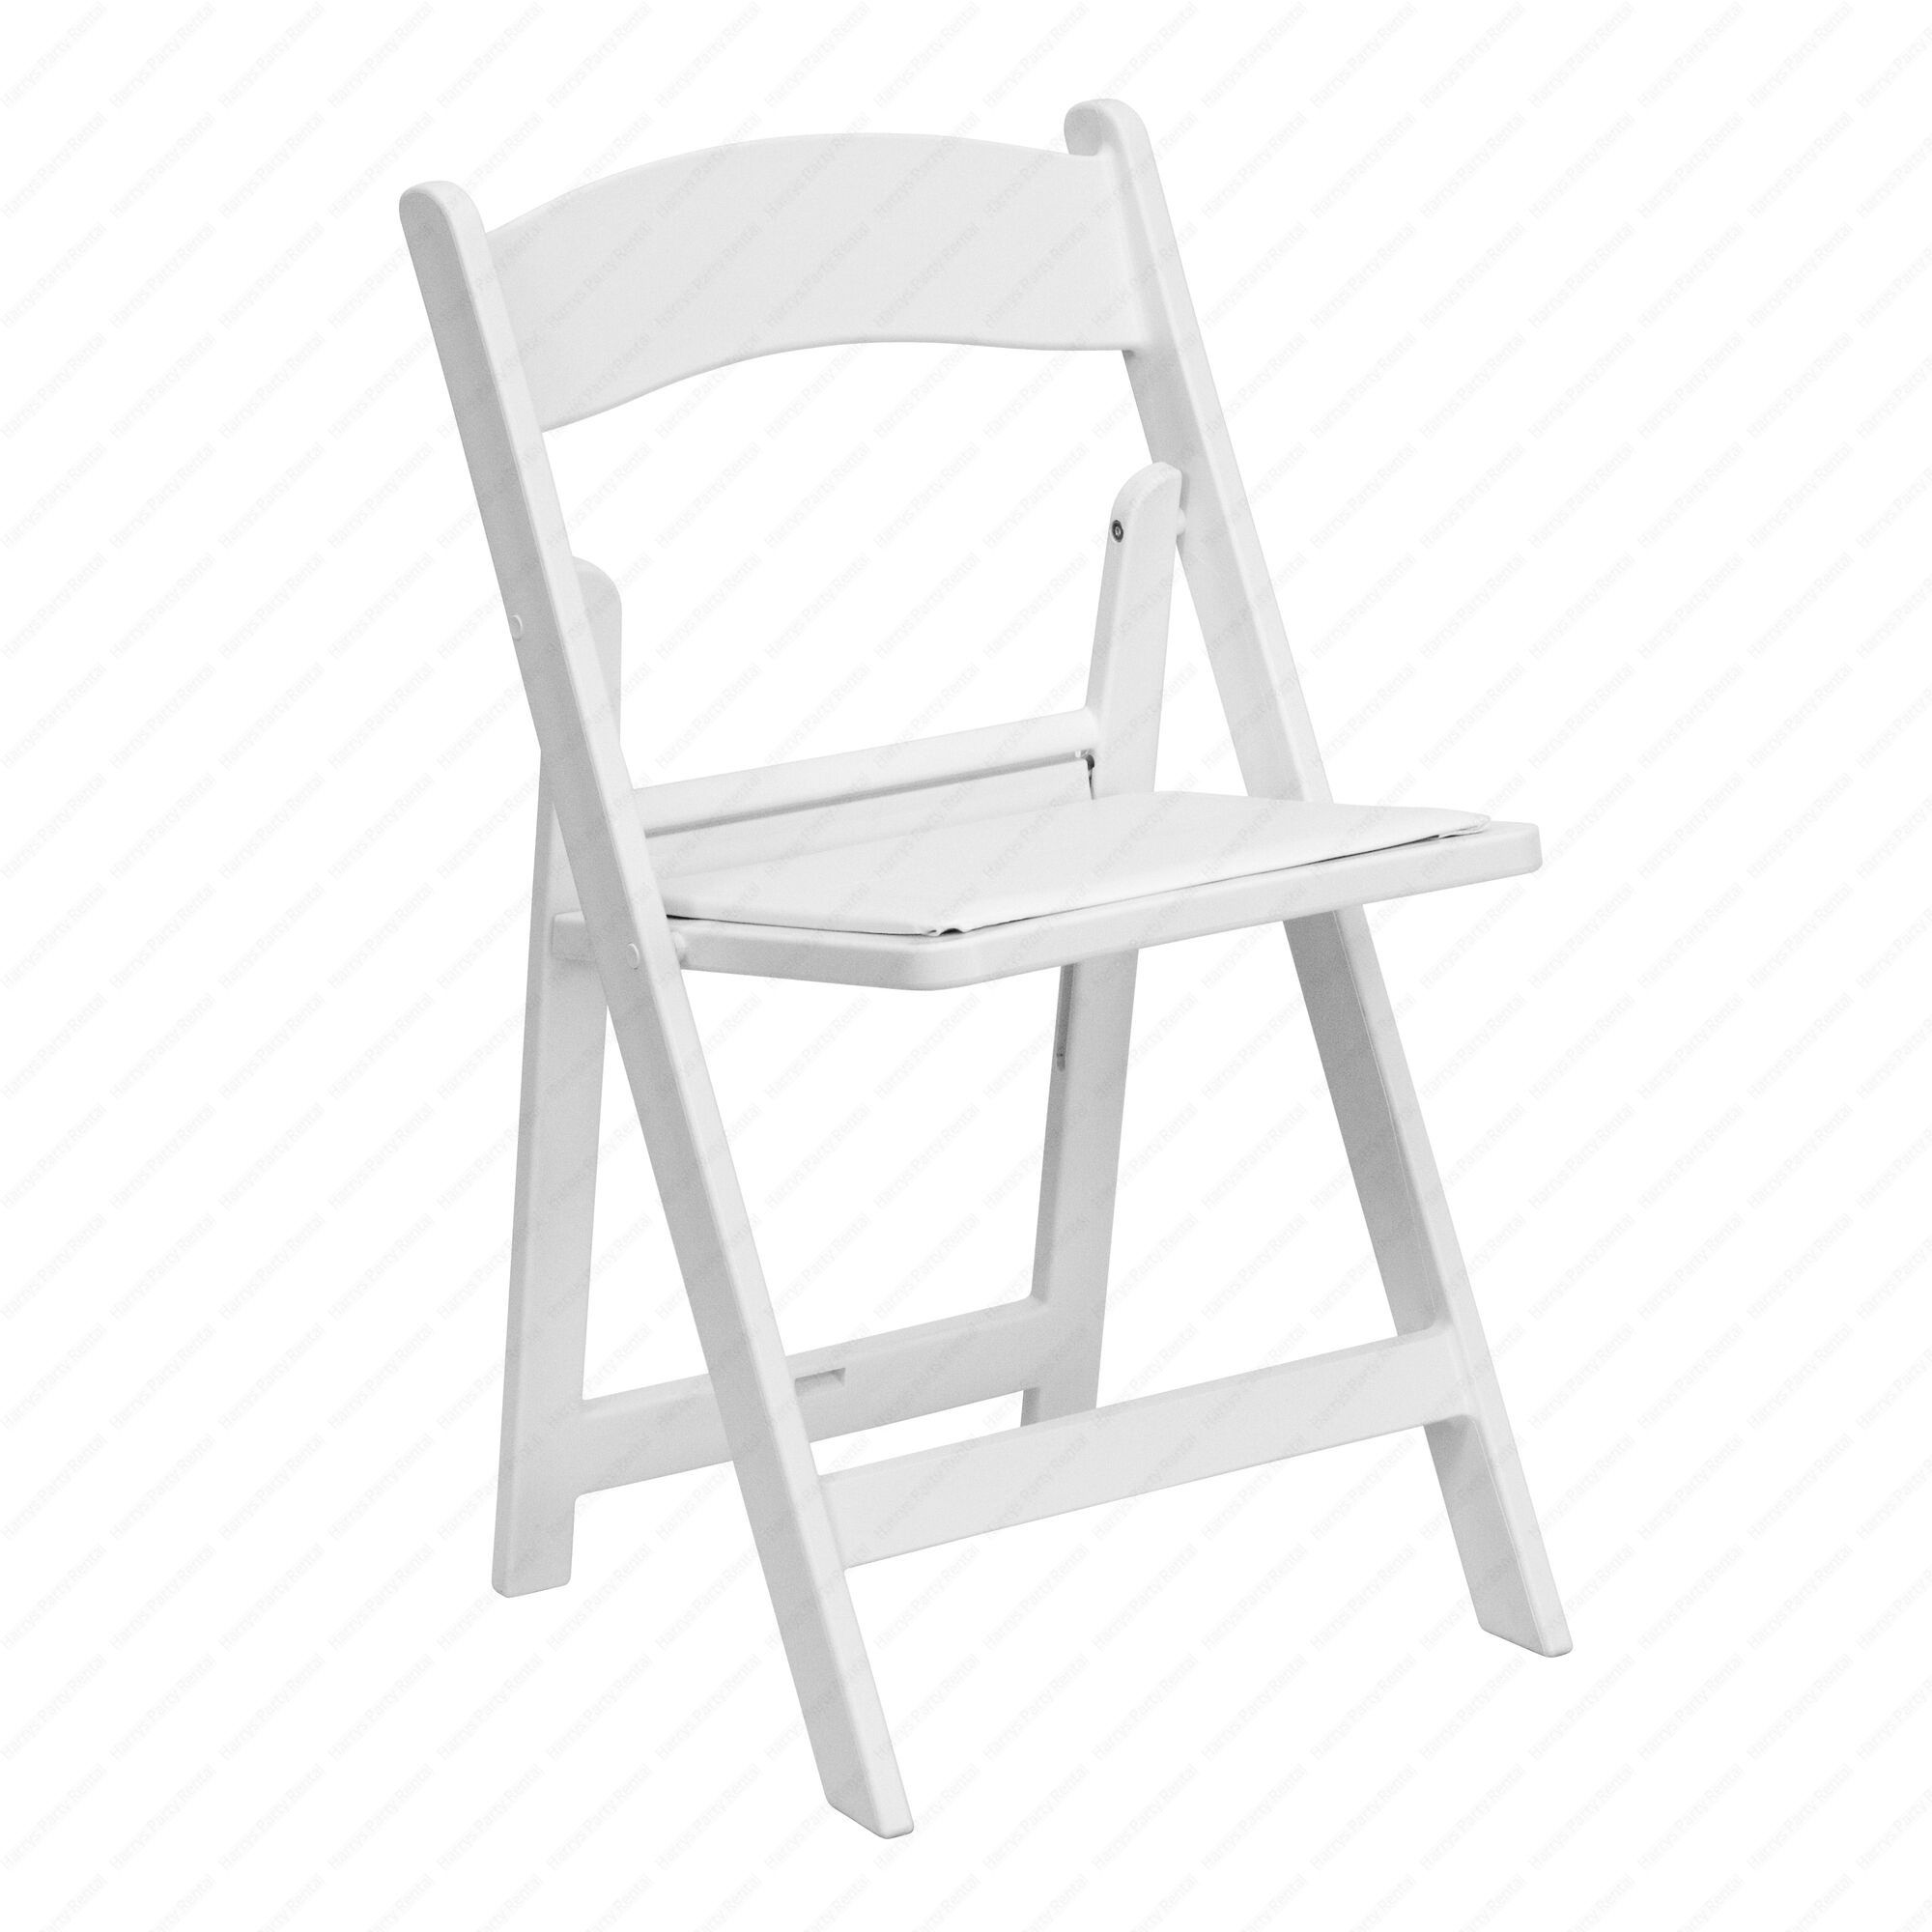 Resin Pop Louis Banquet Chair - White